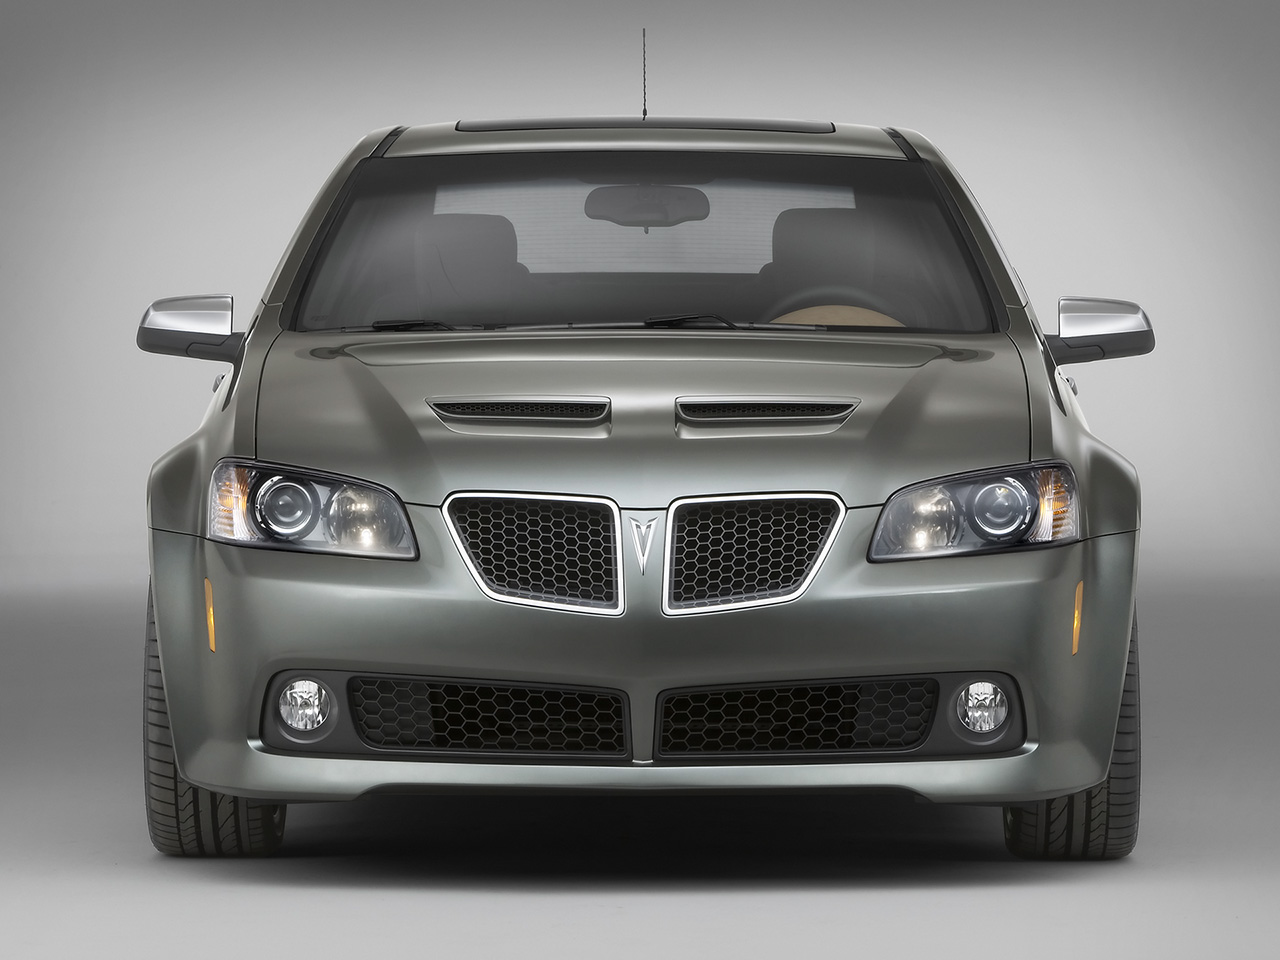 2008 Pontiac G8 GT Show Car